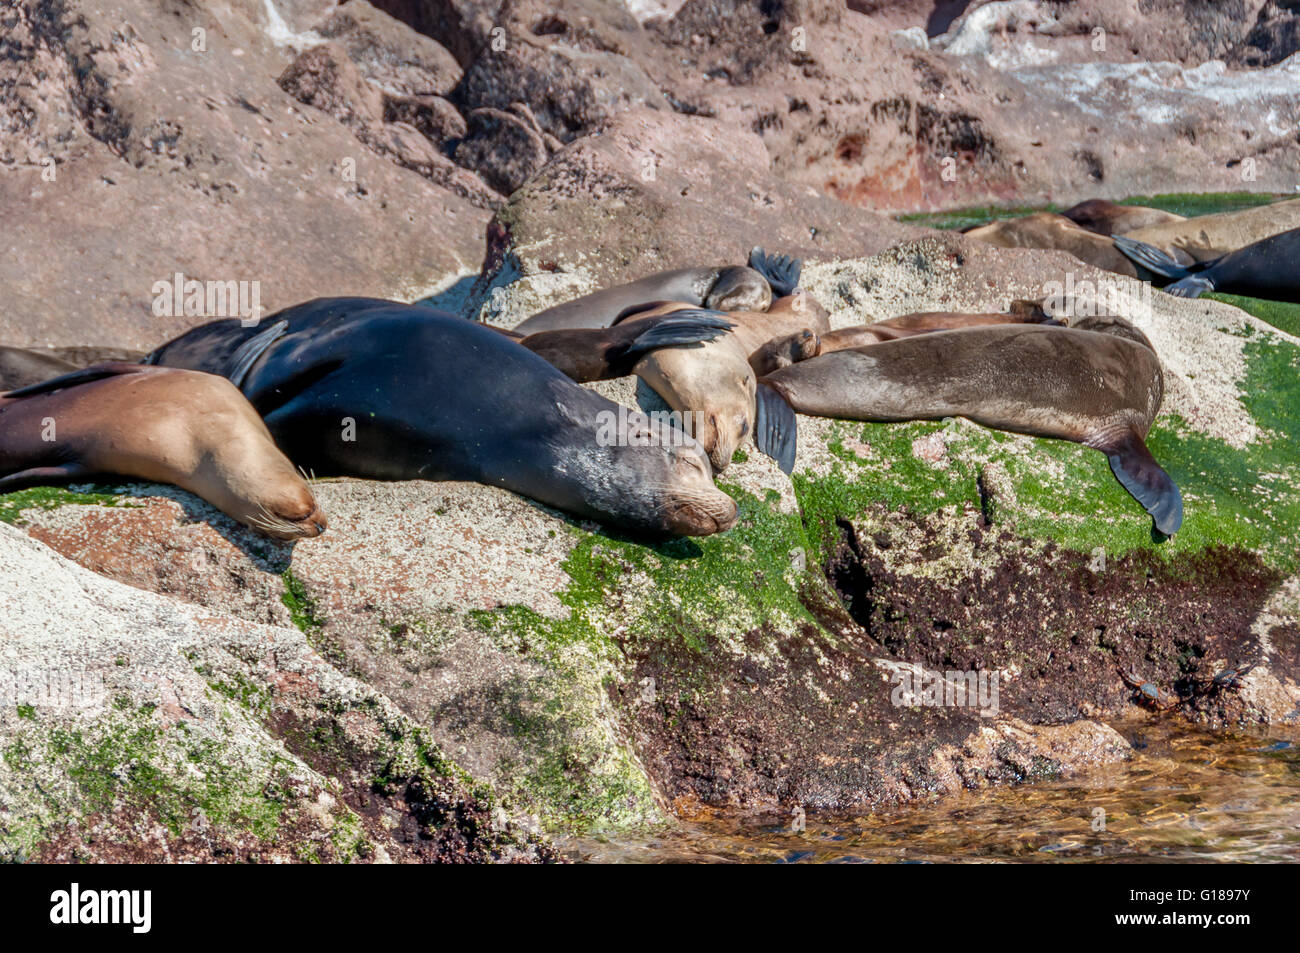 Sunbathing California sea lions at Los Islotes colony near Isla Espiritu Santo in Mexico's Sea of Cortez / Cortes, near La Paz. Stock Photo